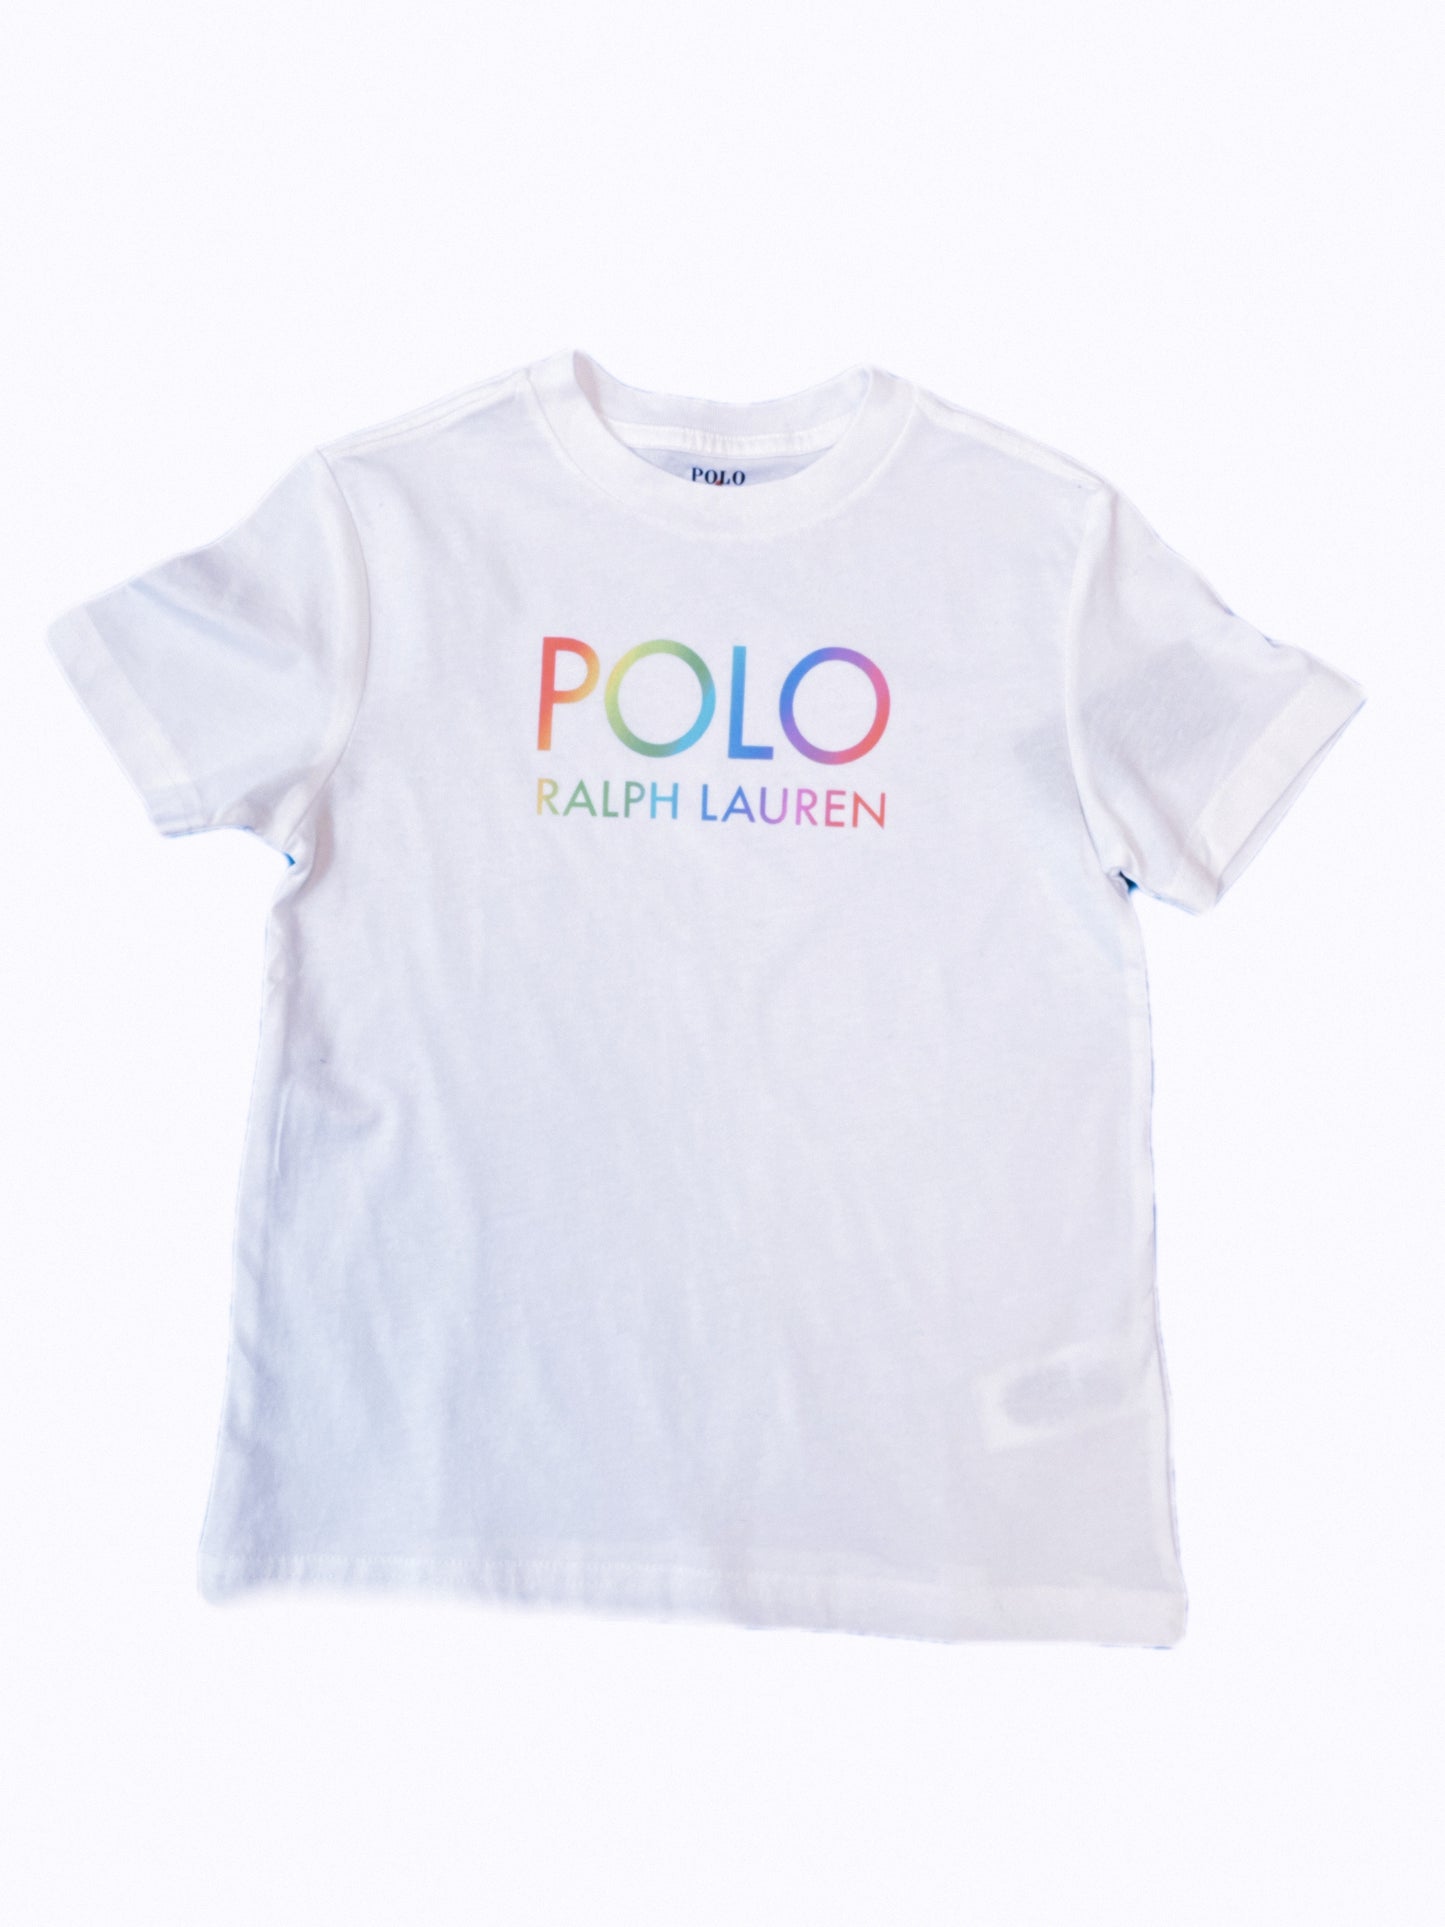 Polo Boys Ralph Lauren T-shirt